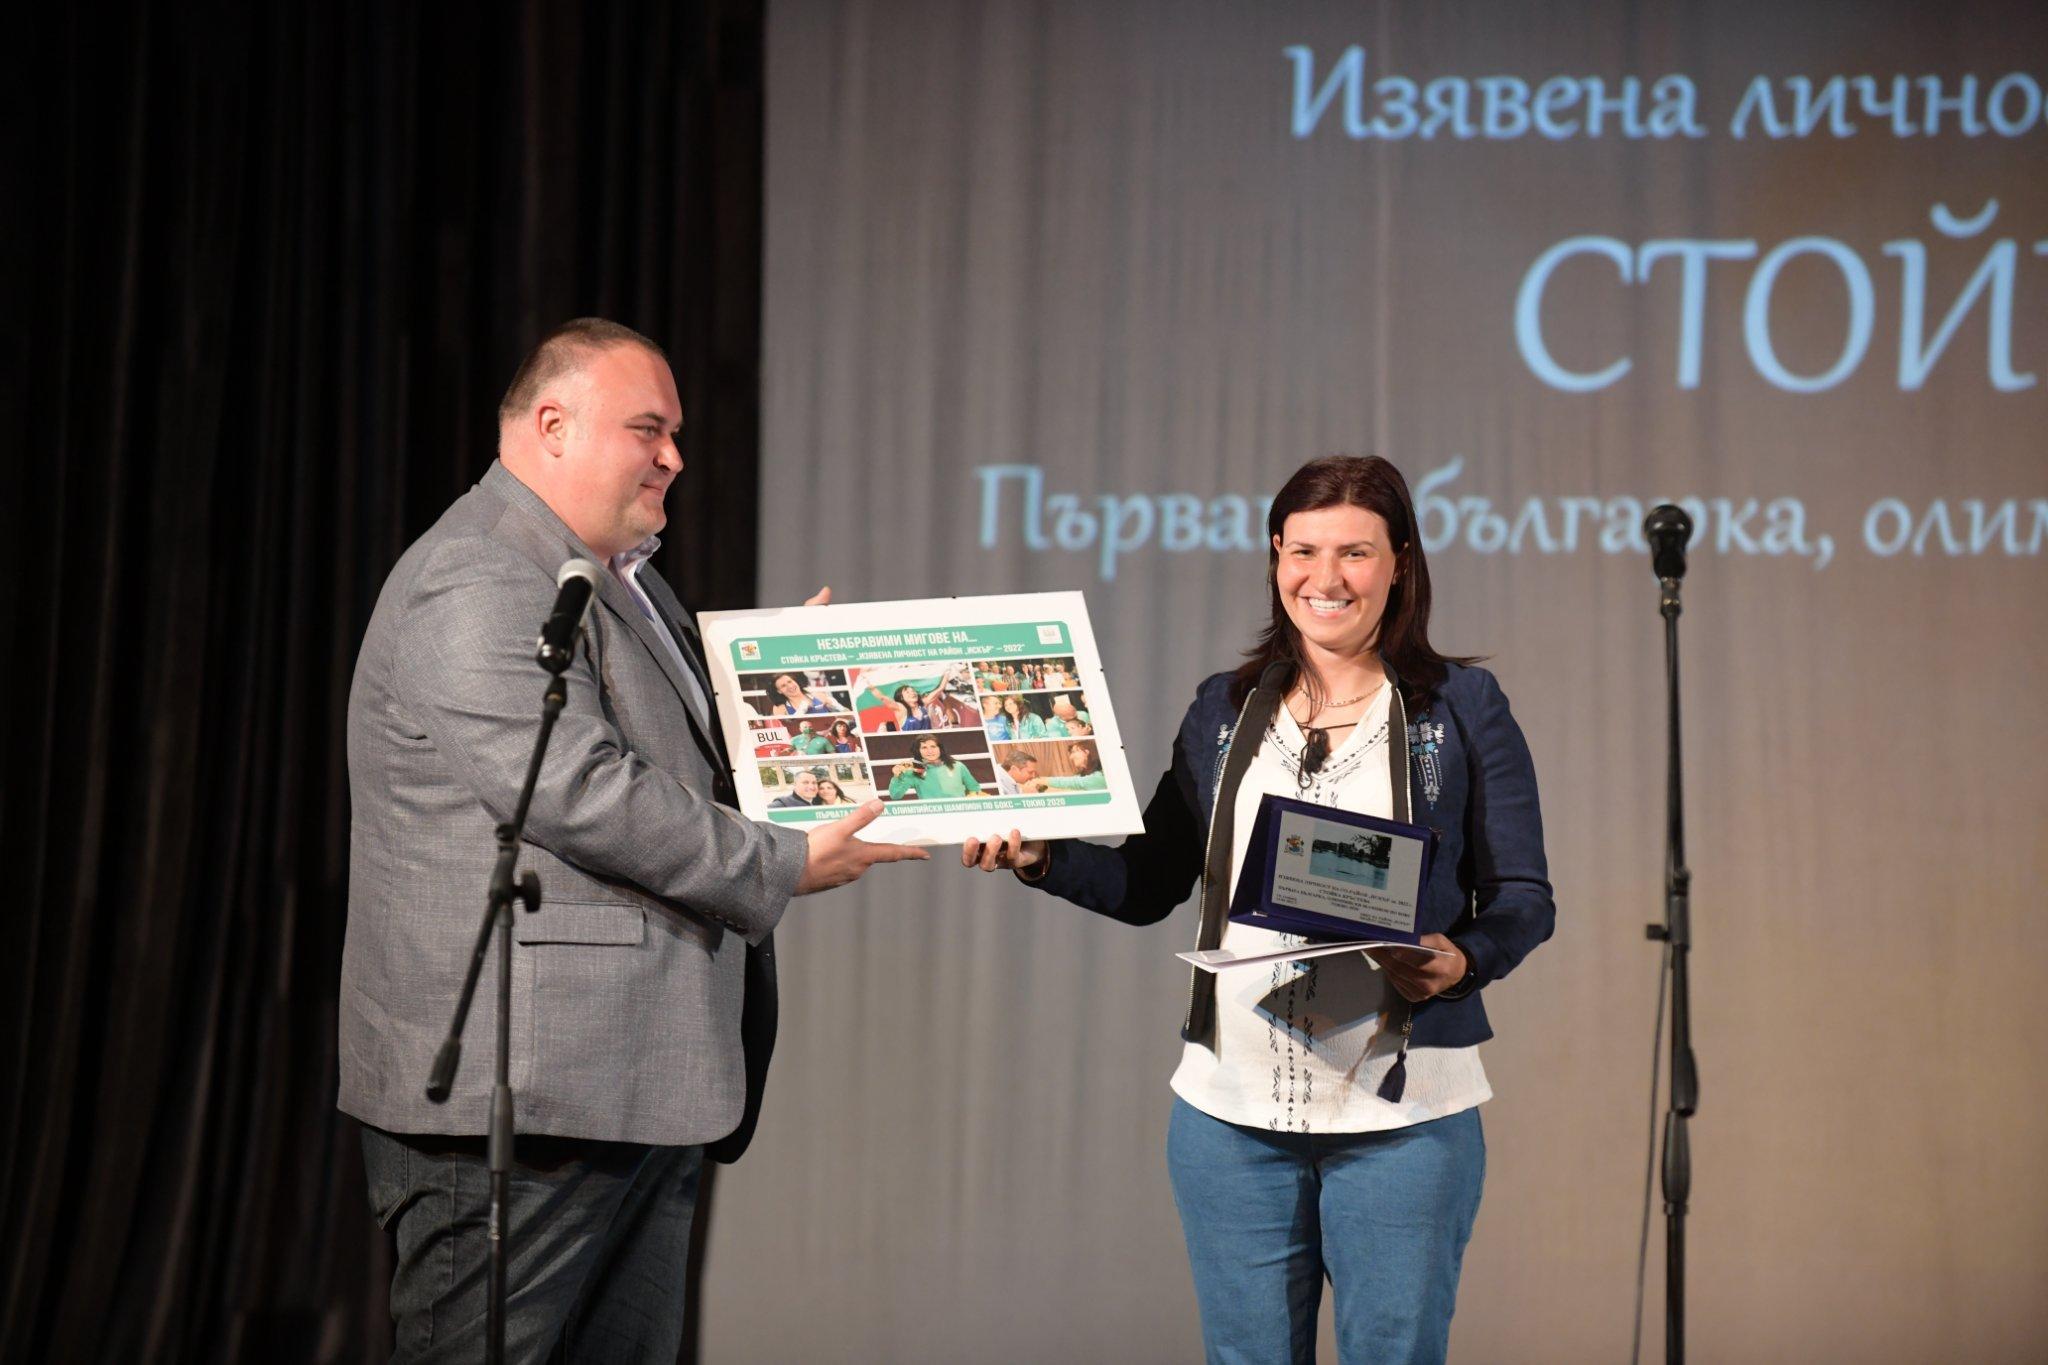 Златната Стойка Кръстева получи приз „Изявена личност на район Искър"